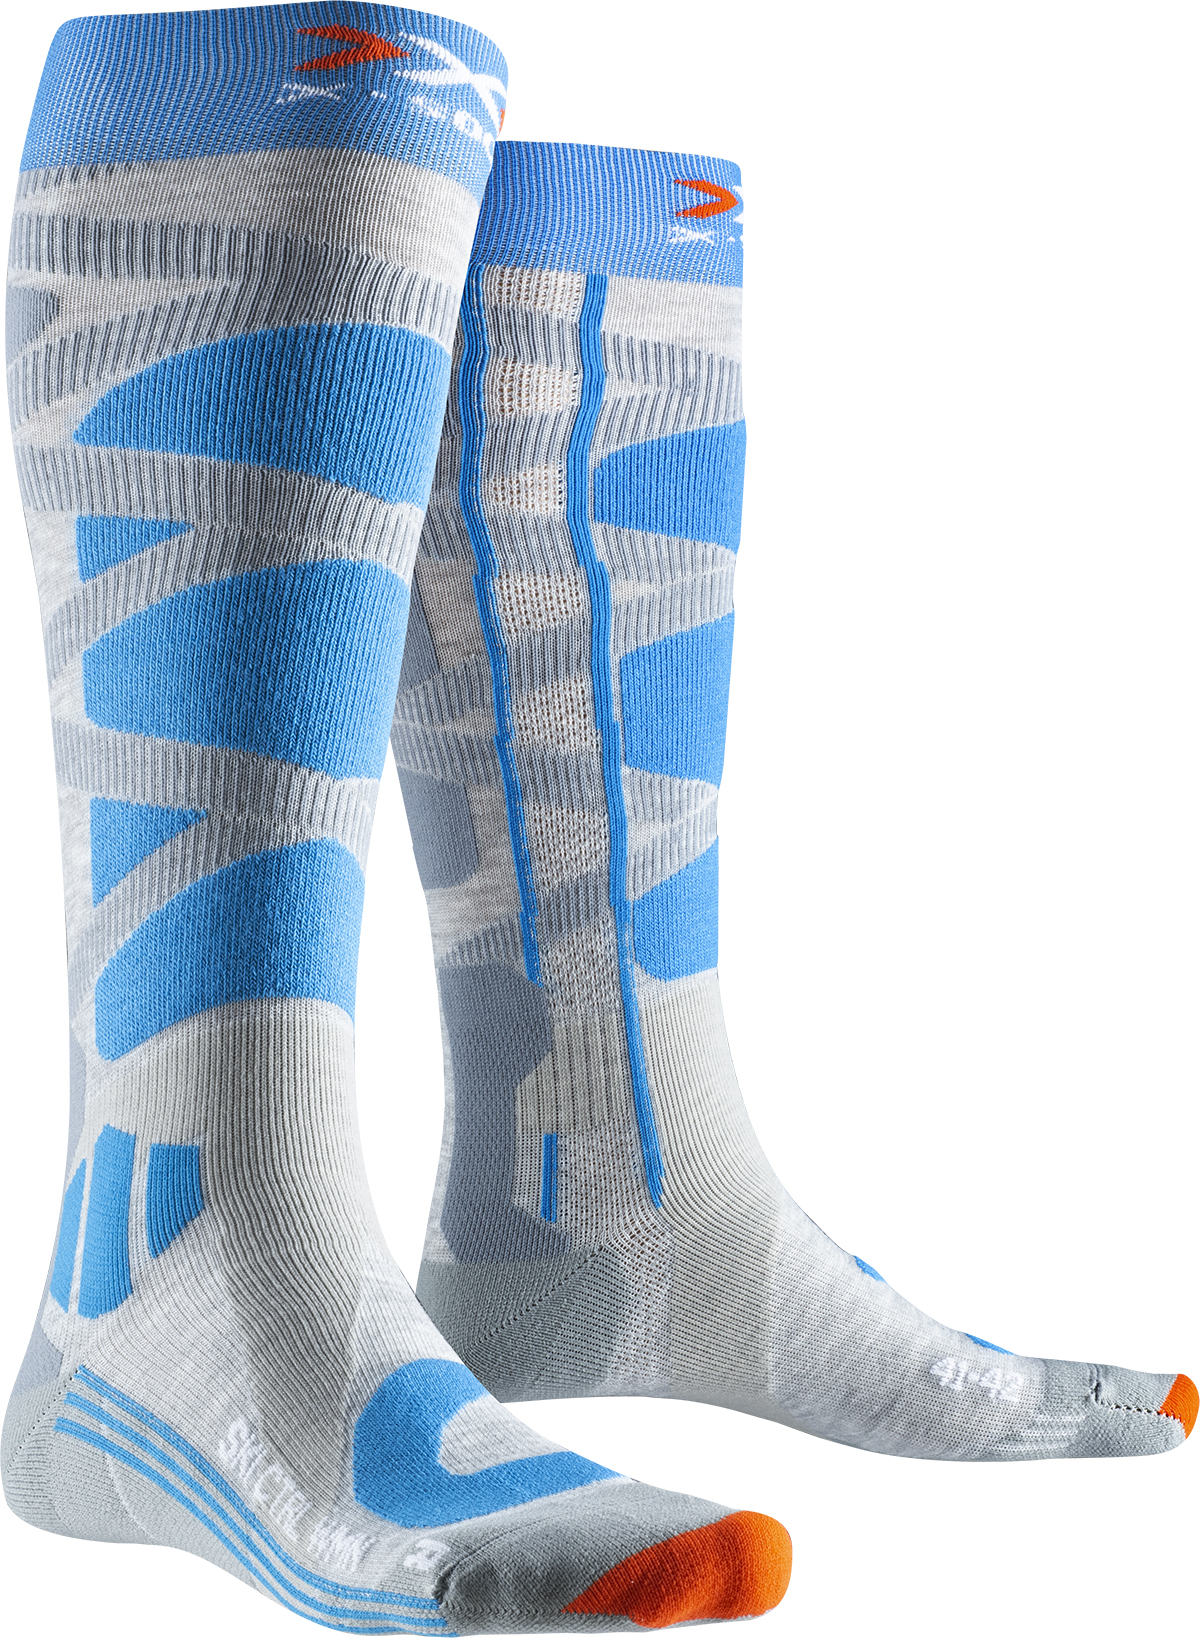 Лижні шкарпетки X-Socks Grey Melange/Turquoise (39-40)